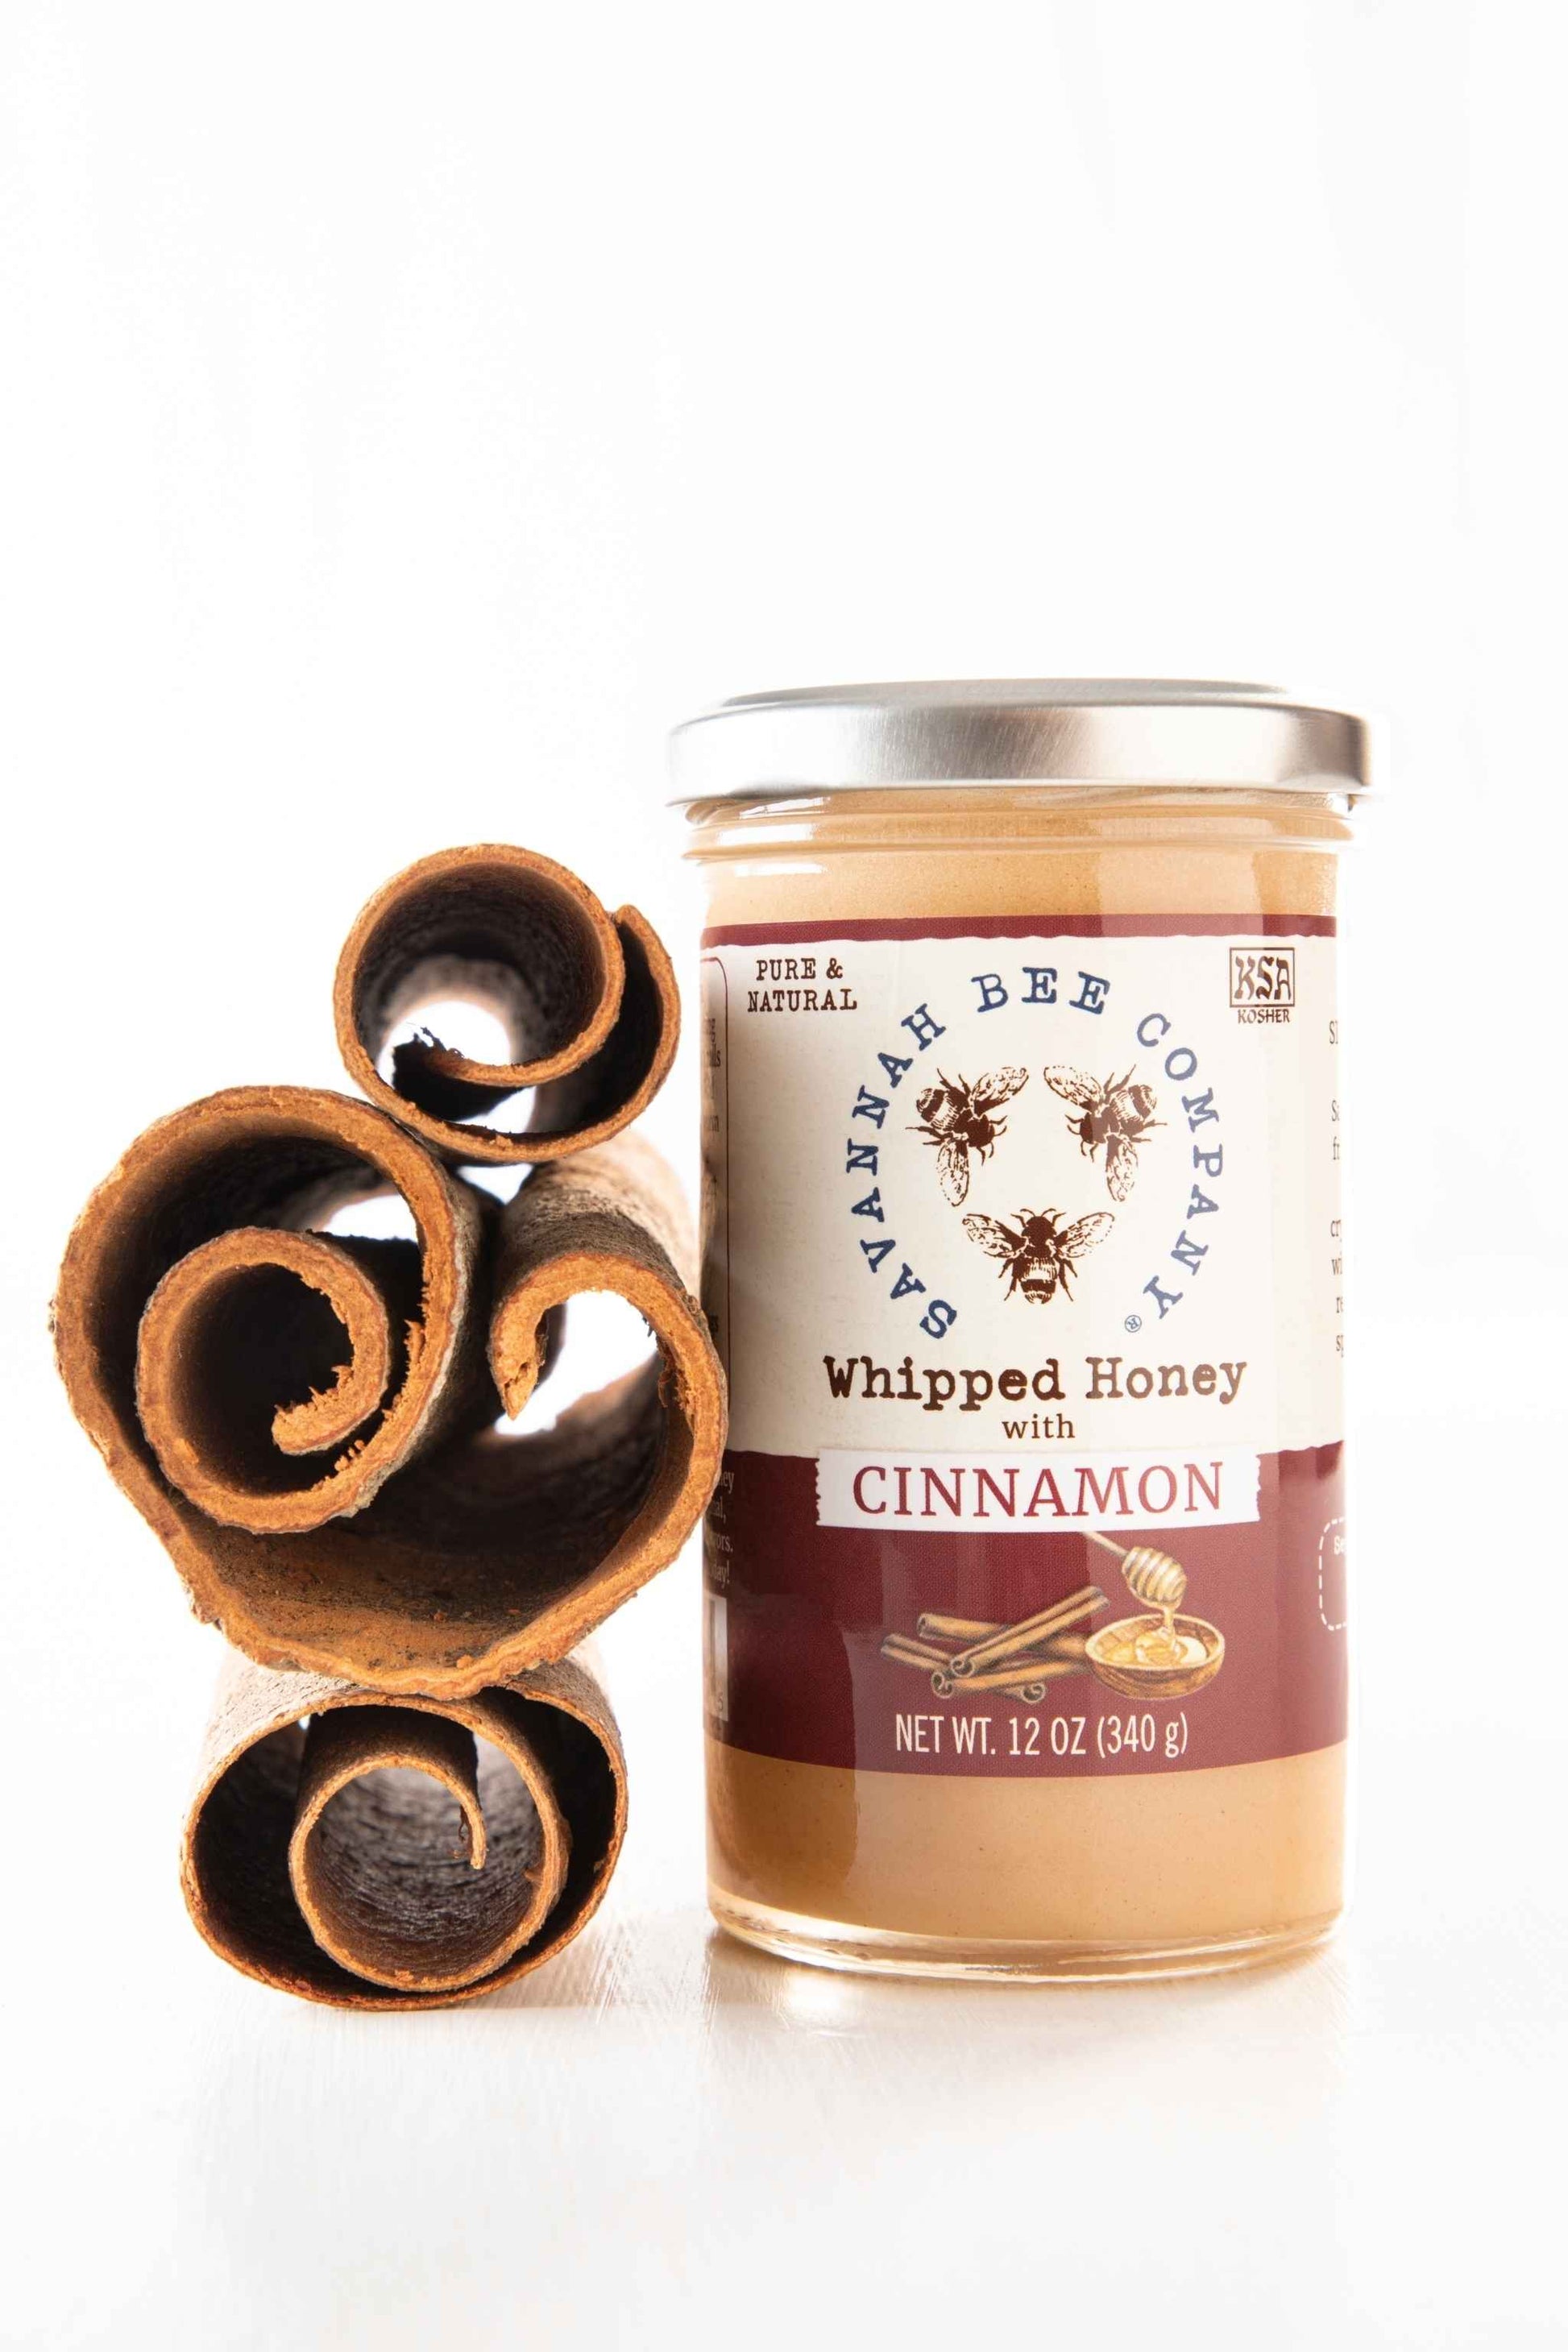  Whipped Honey cinnamon 12 ounce studio shot.